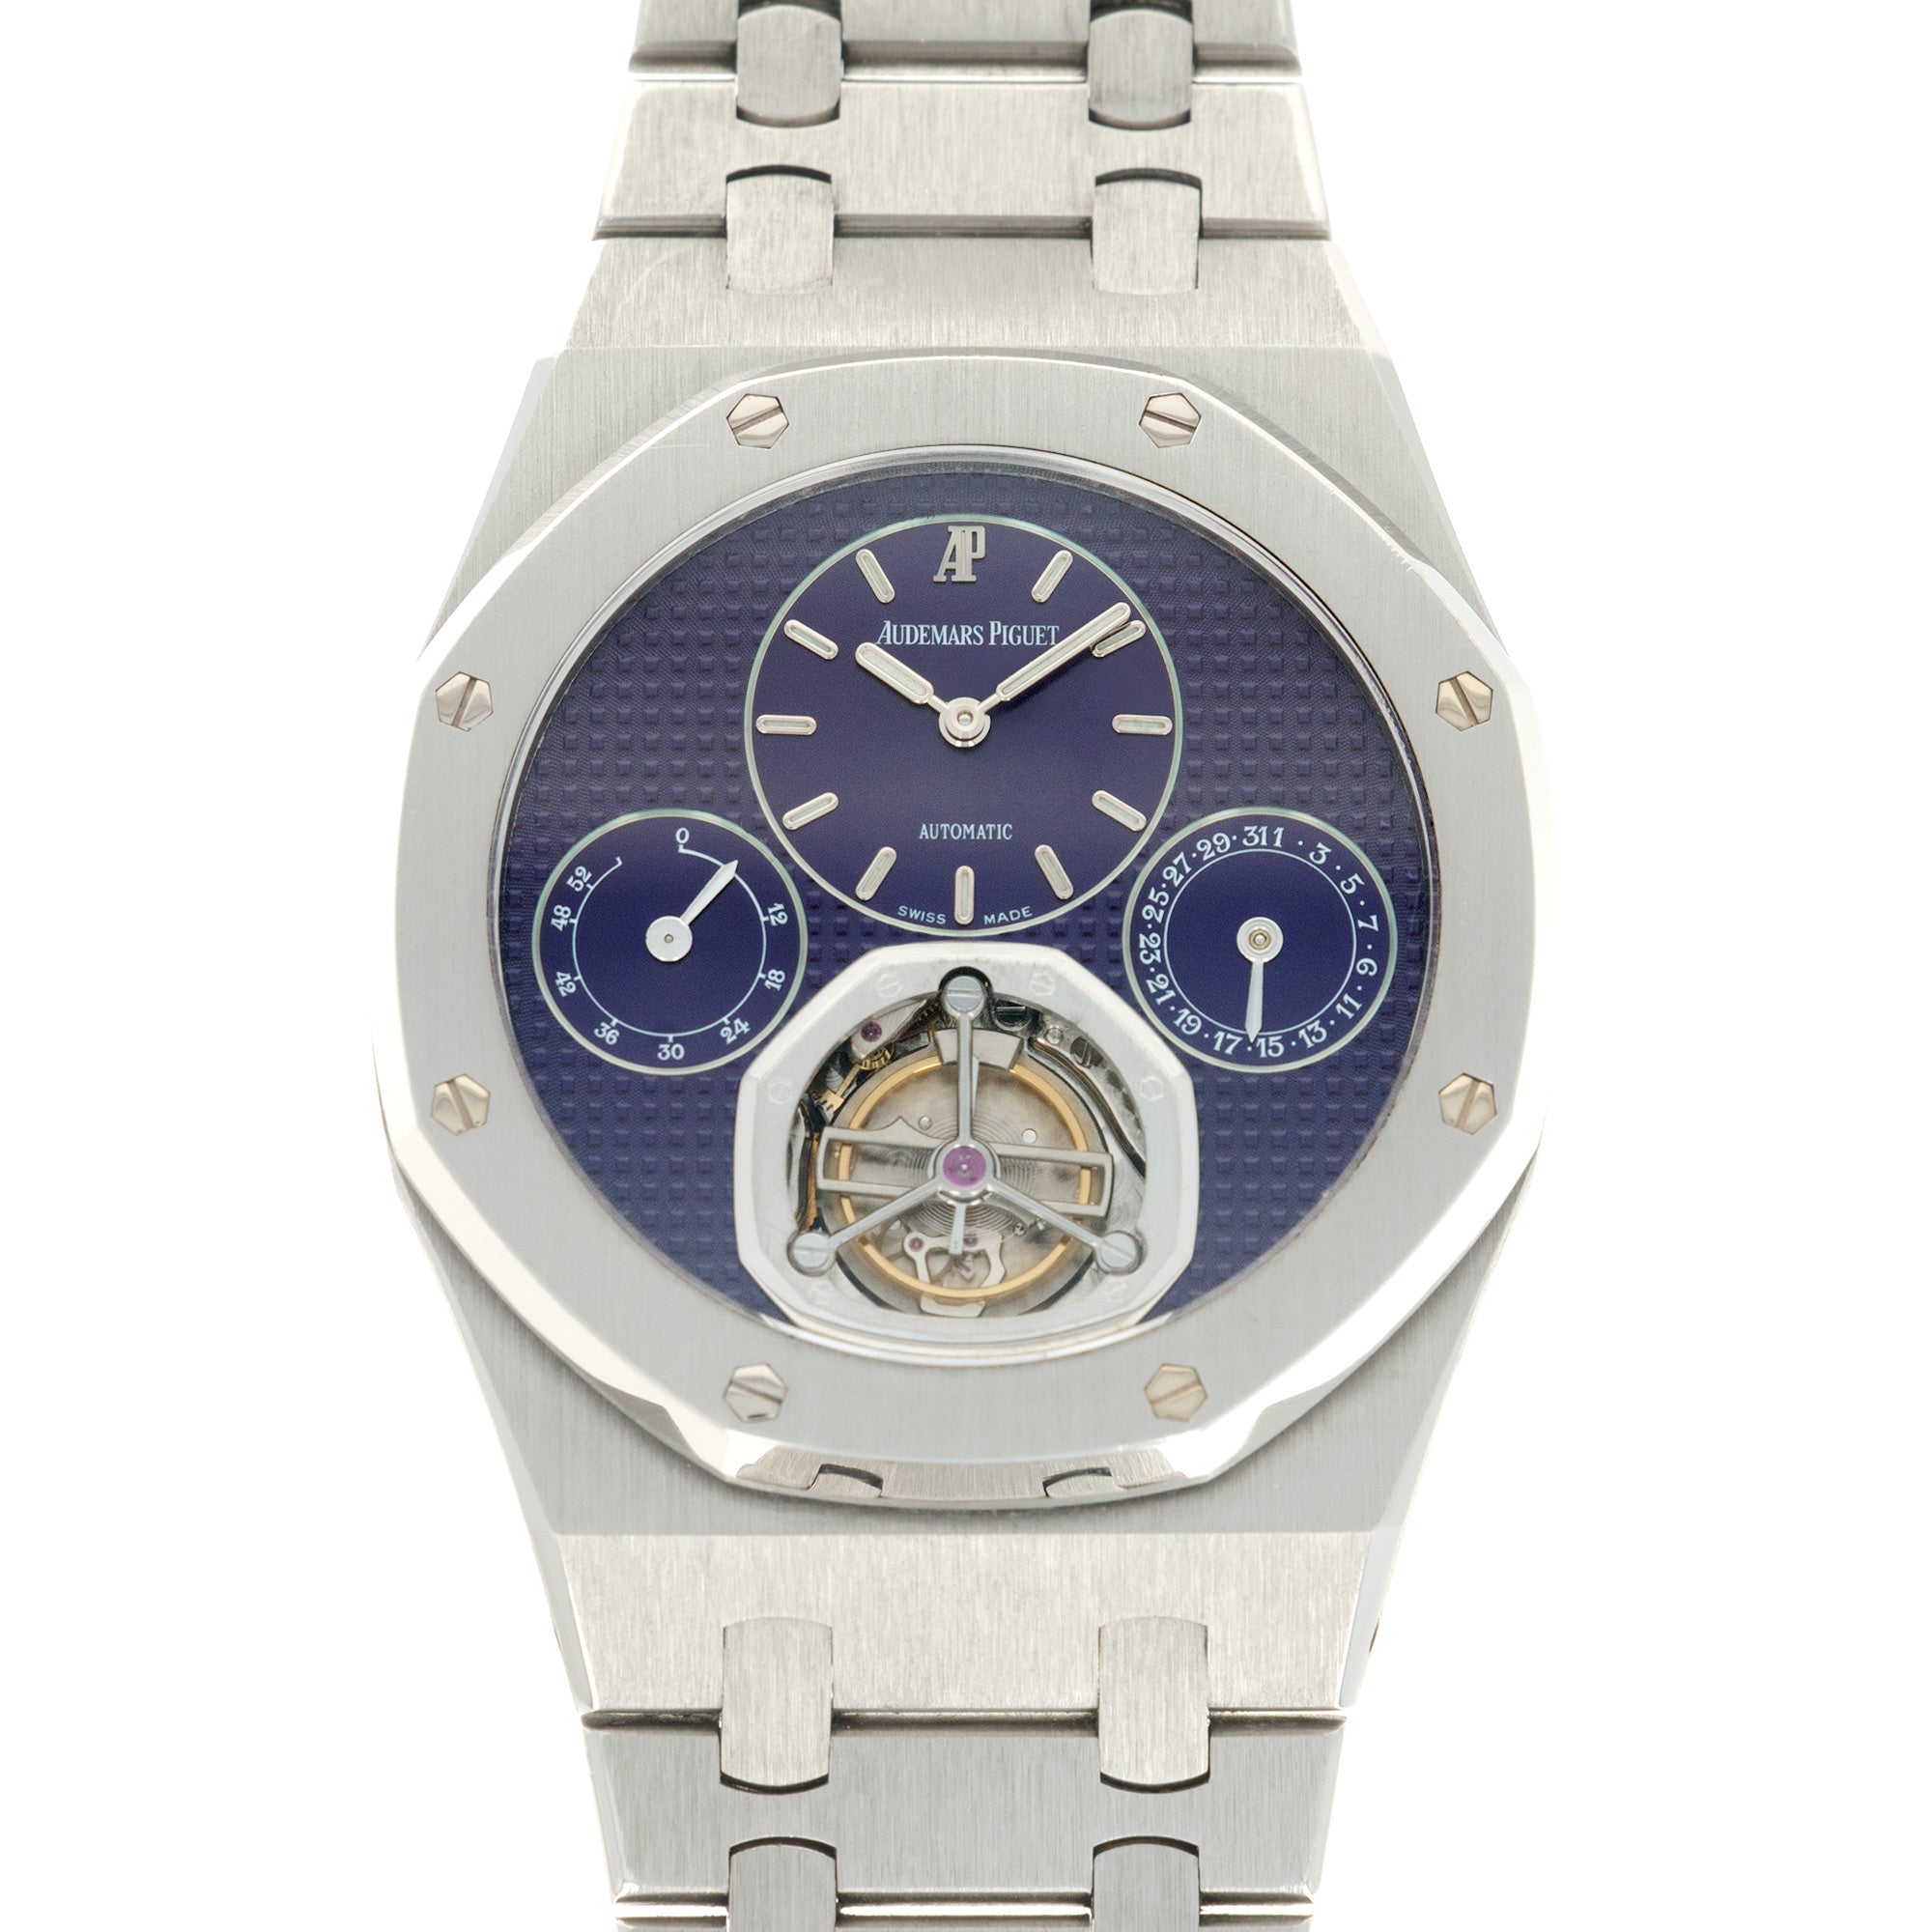 Audemars Piguet - Audemars Piguet Platinum Royal Oak Anniversary Tourbillon Watch, Ref. 25831 - The Keystone Watches